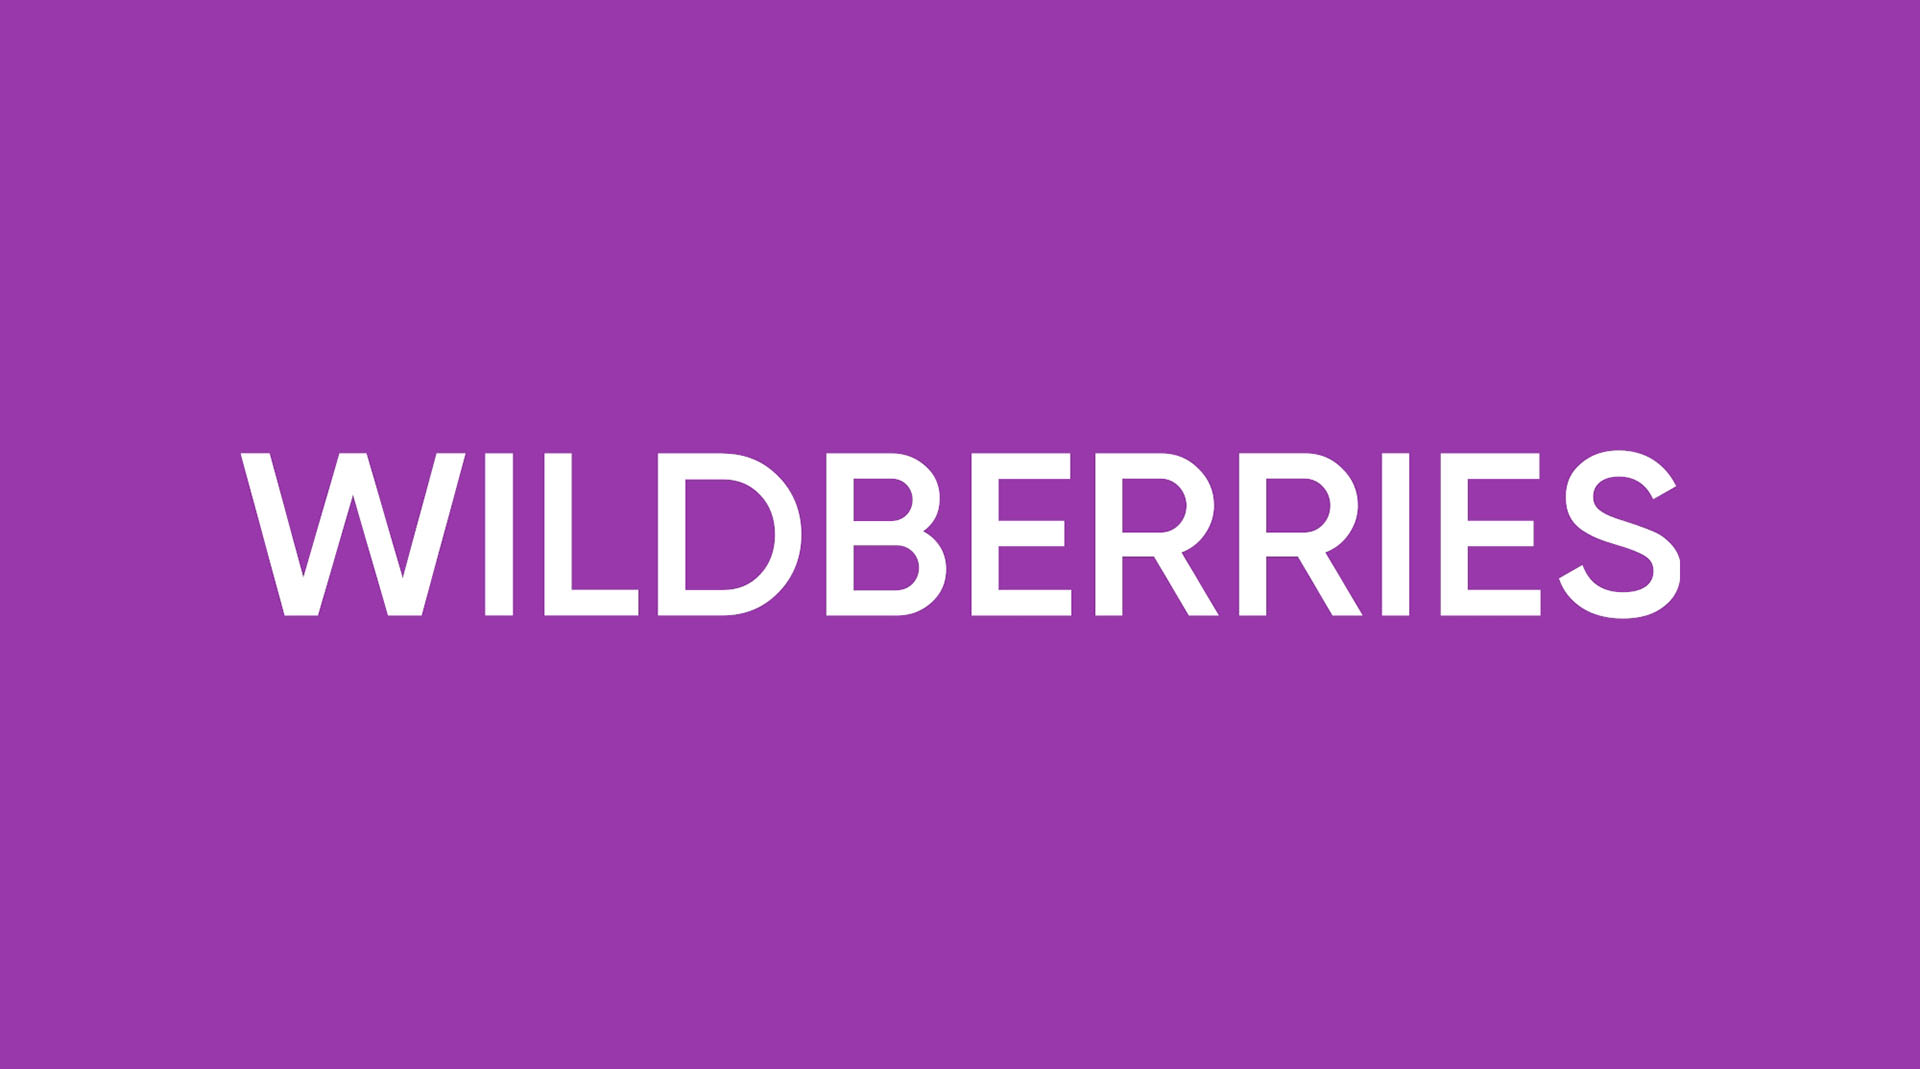 Wildberries изнутри: как на самом деле работает главный маркетплейс России (спросили продавцов)